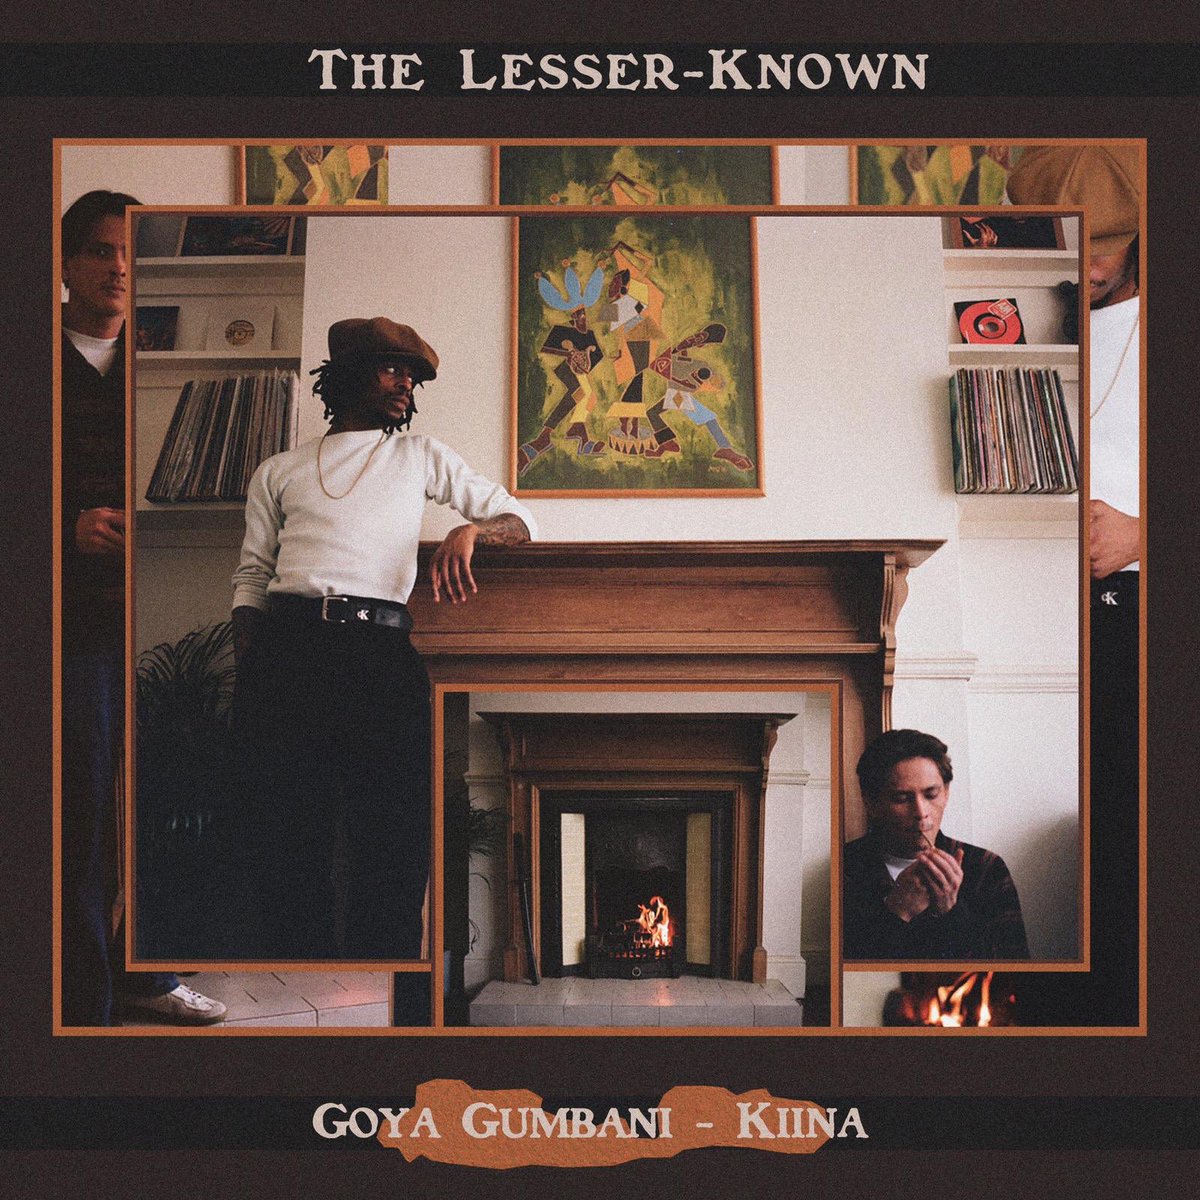 Goya Gumbani [@GoyaGumbani] & Kiina link up for jazz inspired ‘The Lesser Known’ EP